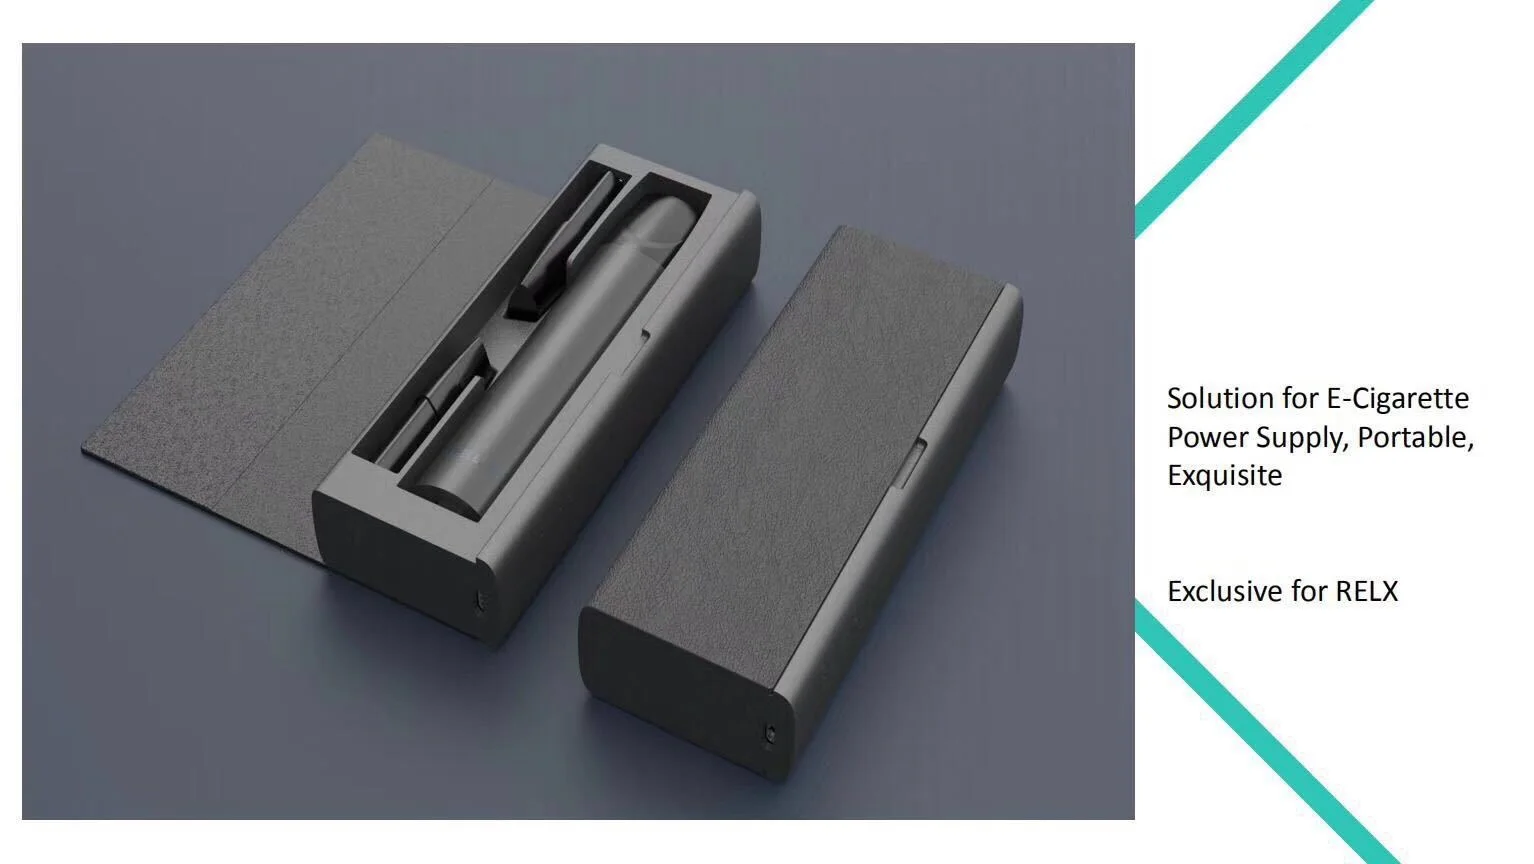 USB 1450mah Емкость зарядная коробка для Relx Kit портативный мини банк питания зарядное устройство коробка Pod держатель для хранения Relx Vape аксессуары